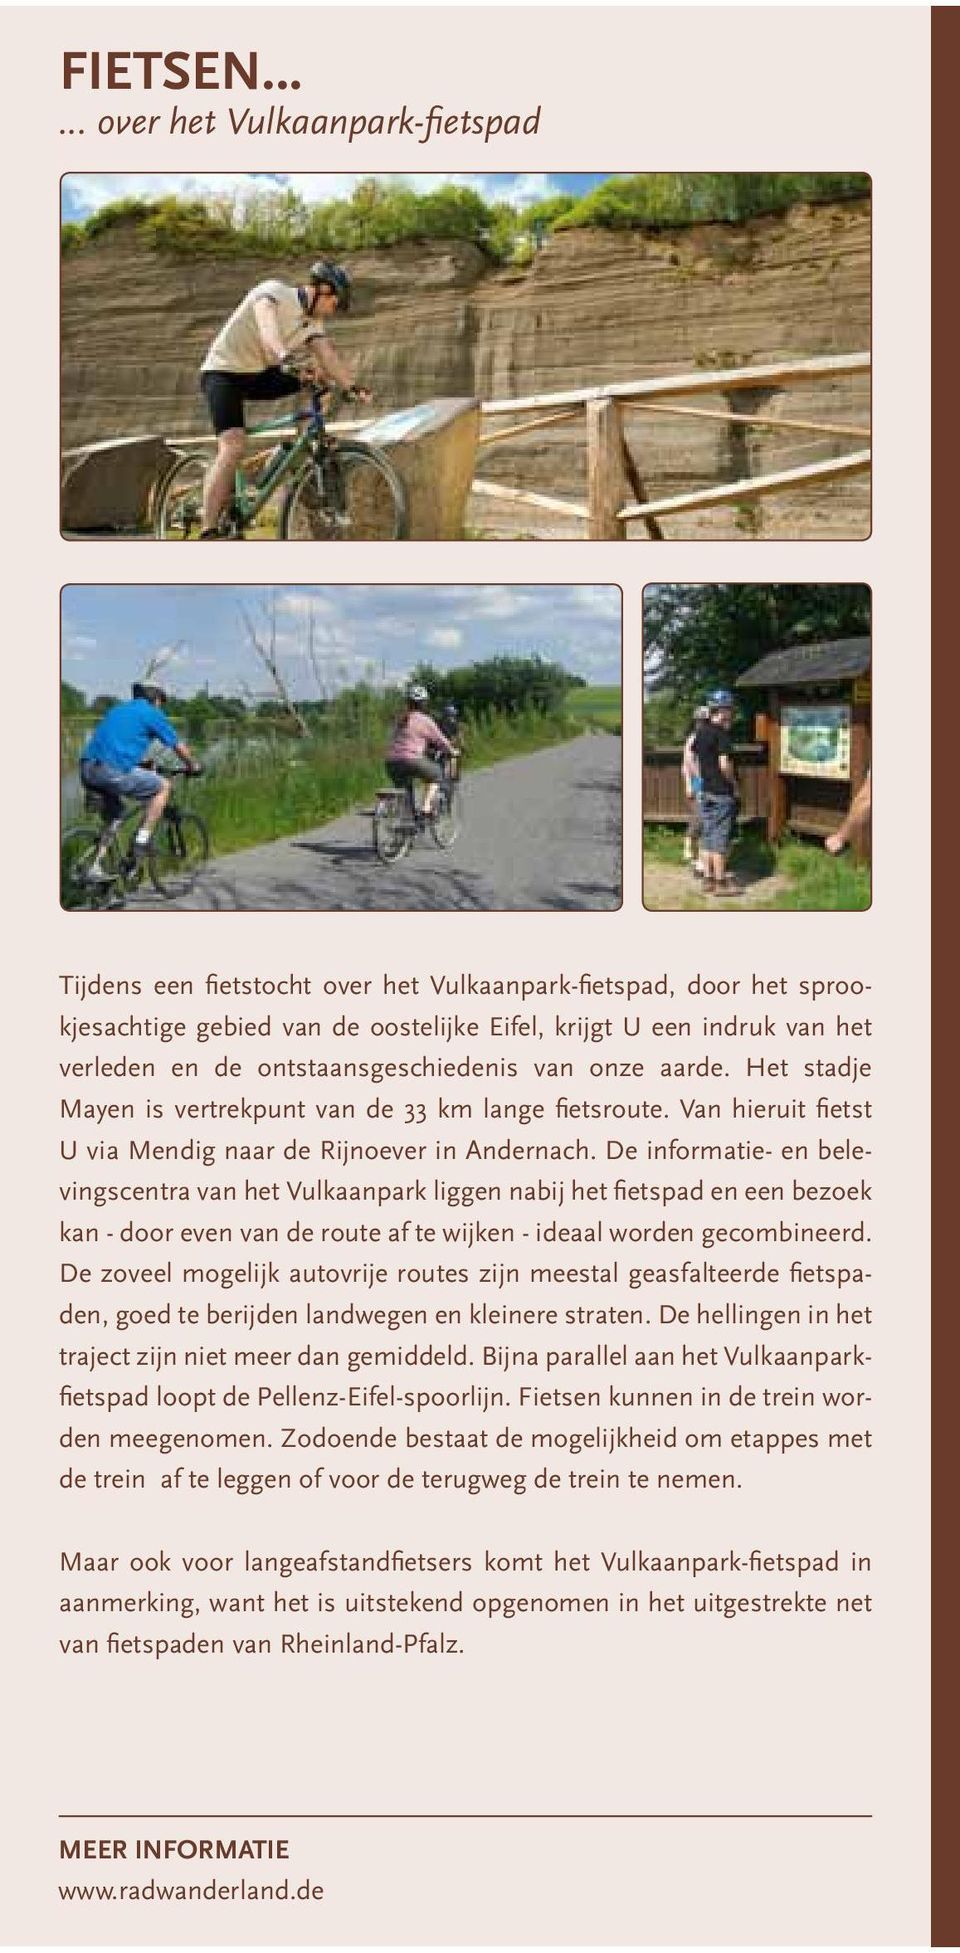 ontstaansgeschiedenis van onze aarde. Het stadje Mayen is vertrekpunt van de 33 km lange fietsroute. Van hieruit fietst U via Mendig naar de Rijnoever in Andernach.